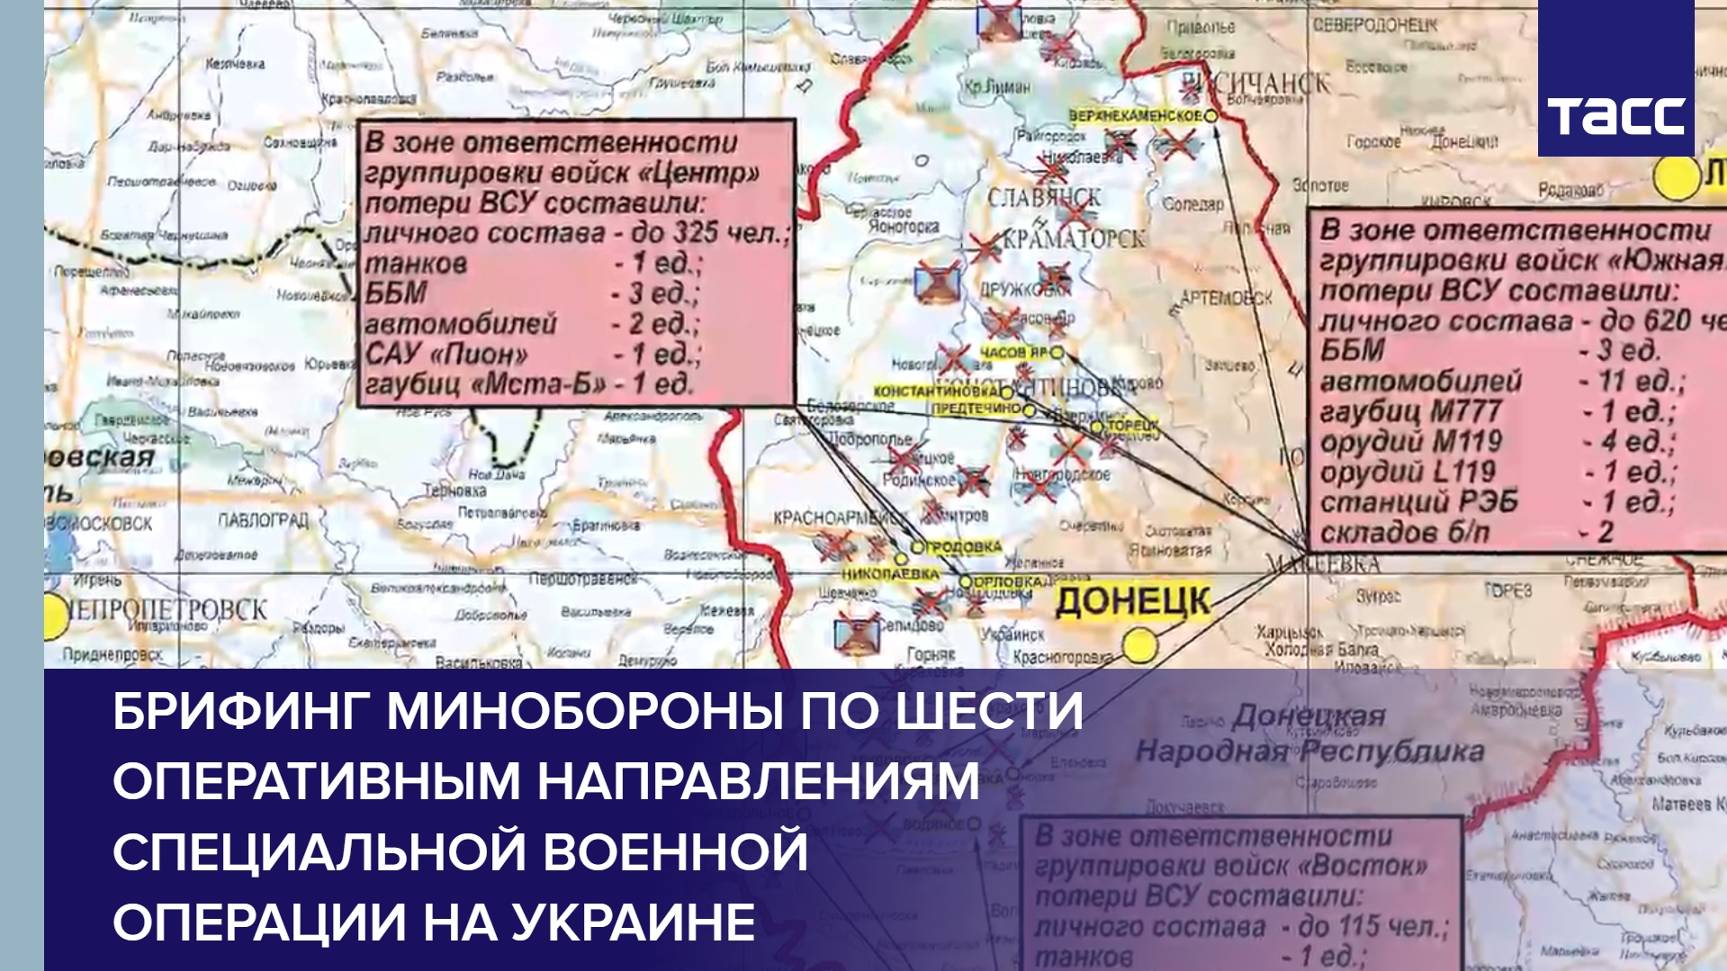 Брифинг Минобороны по шести оперативным направлениям специальной военной операции на Украине